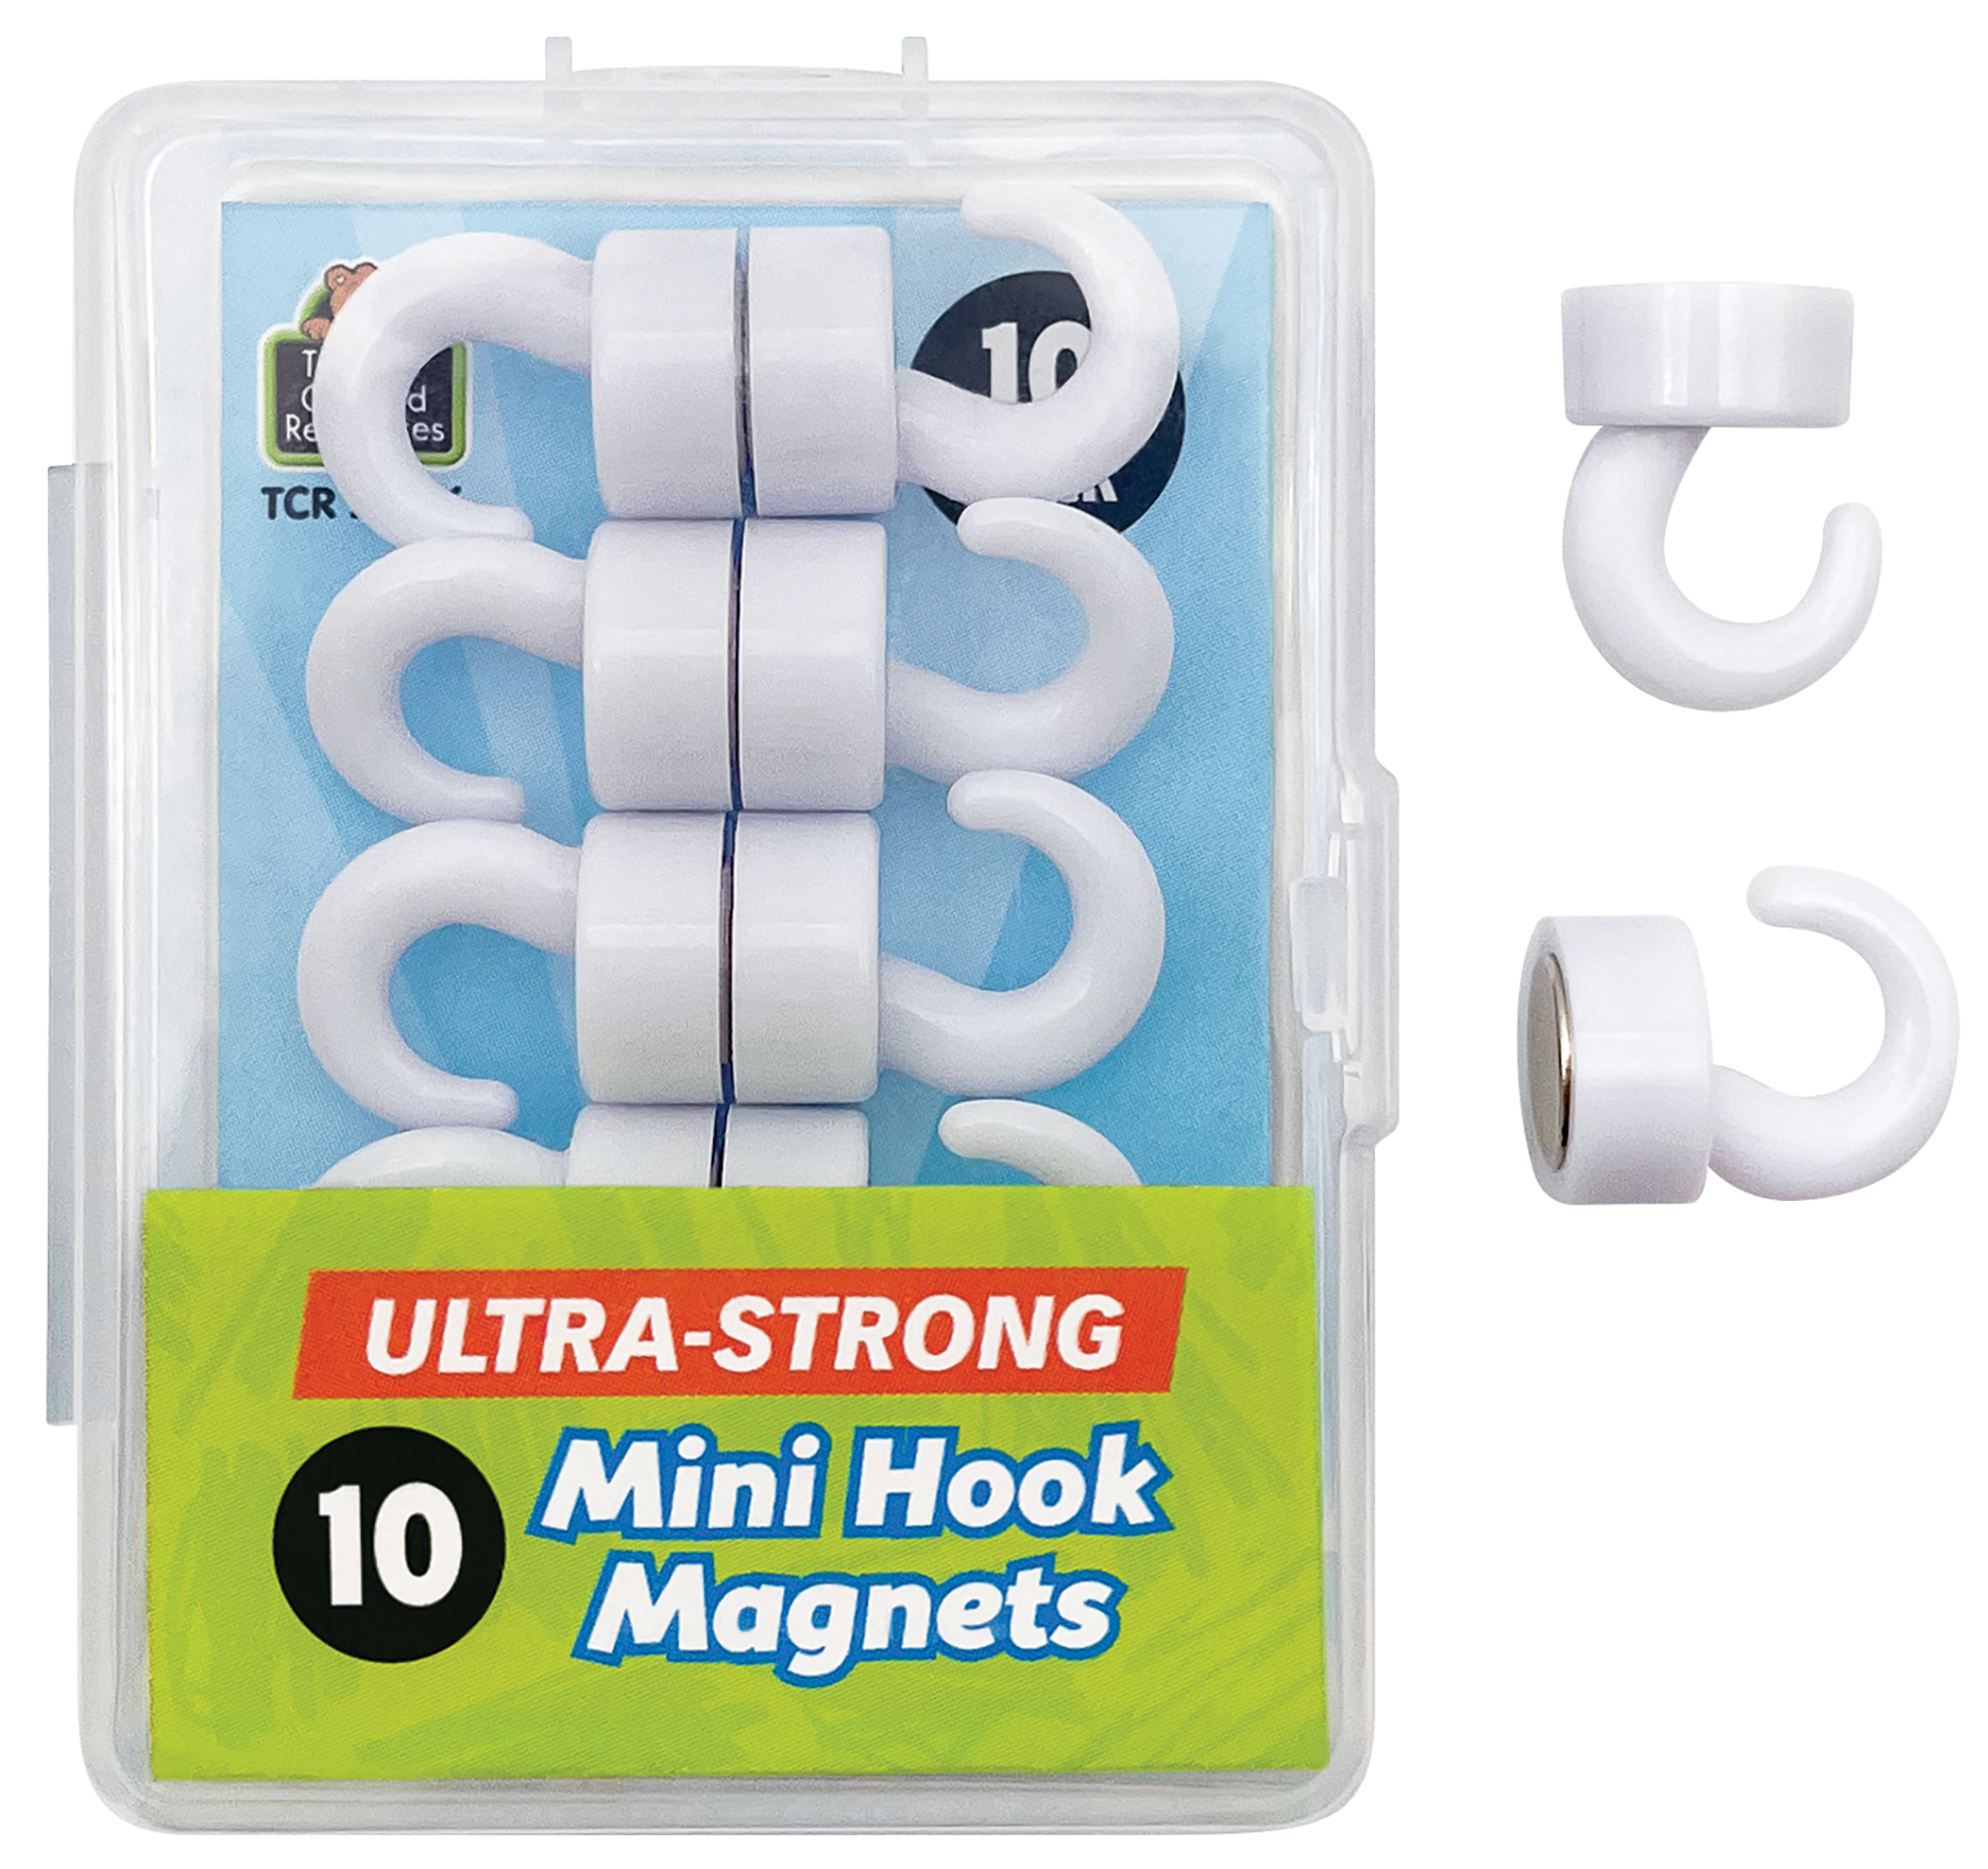 Mini Hook Magnets - TCR21036